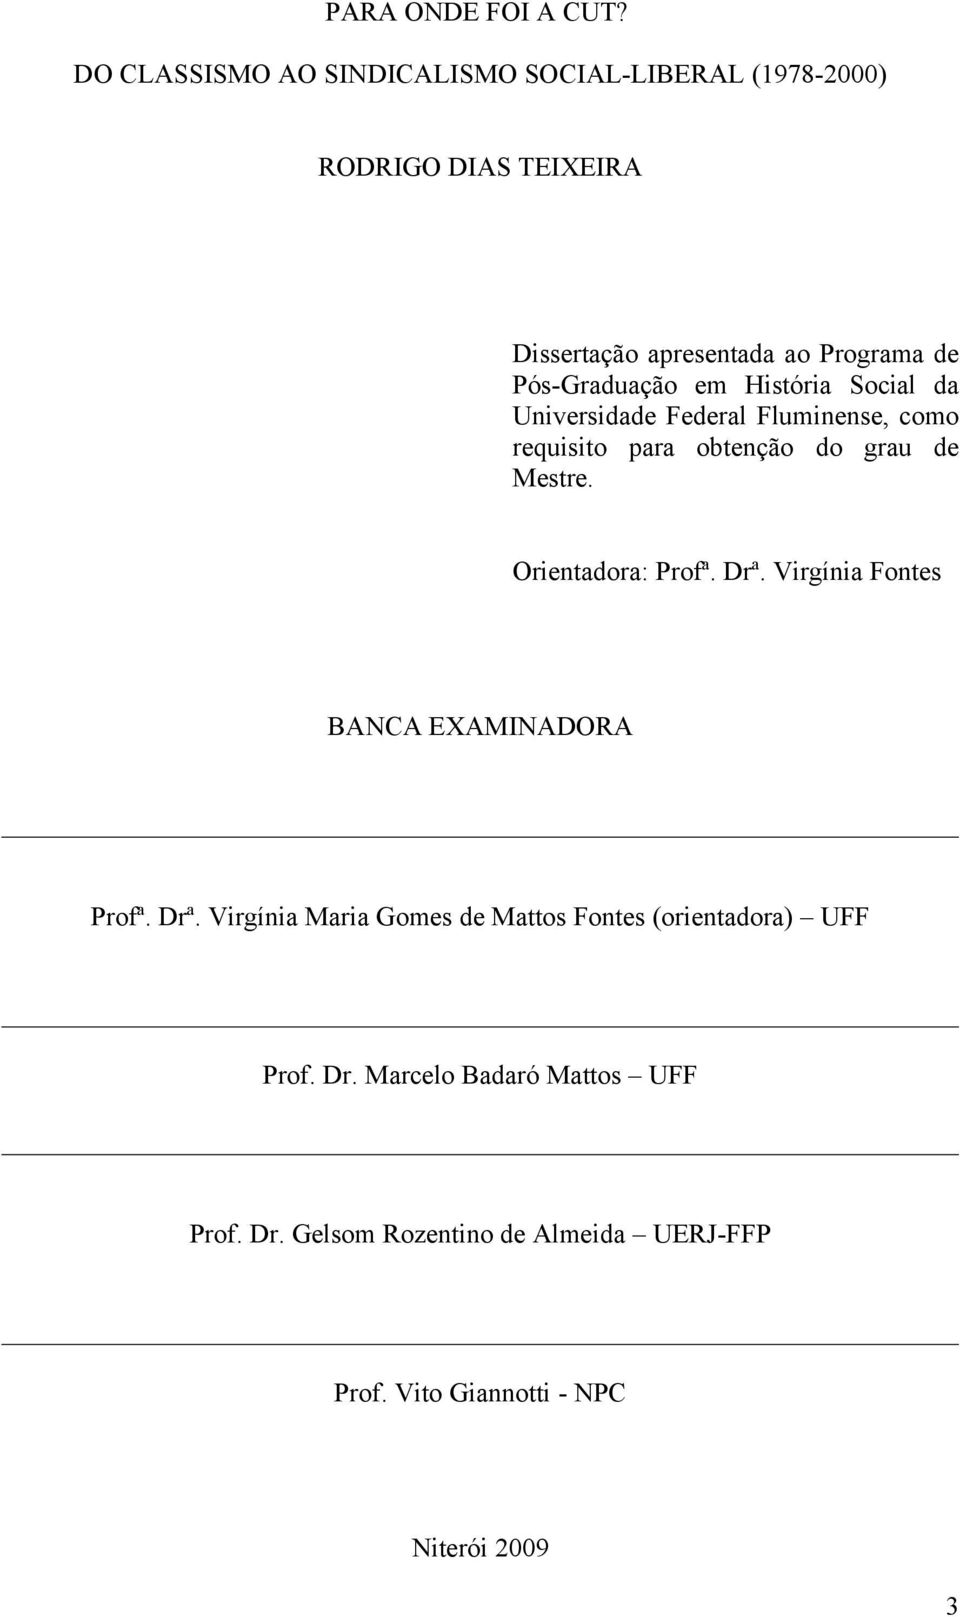 Pós-Graduação em História Social da Universidade Federal Fluminense, como requisito para obtenção do grau de Mestre.